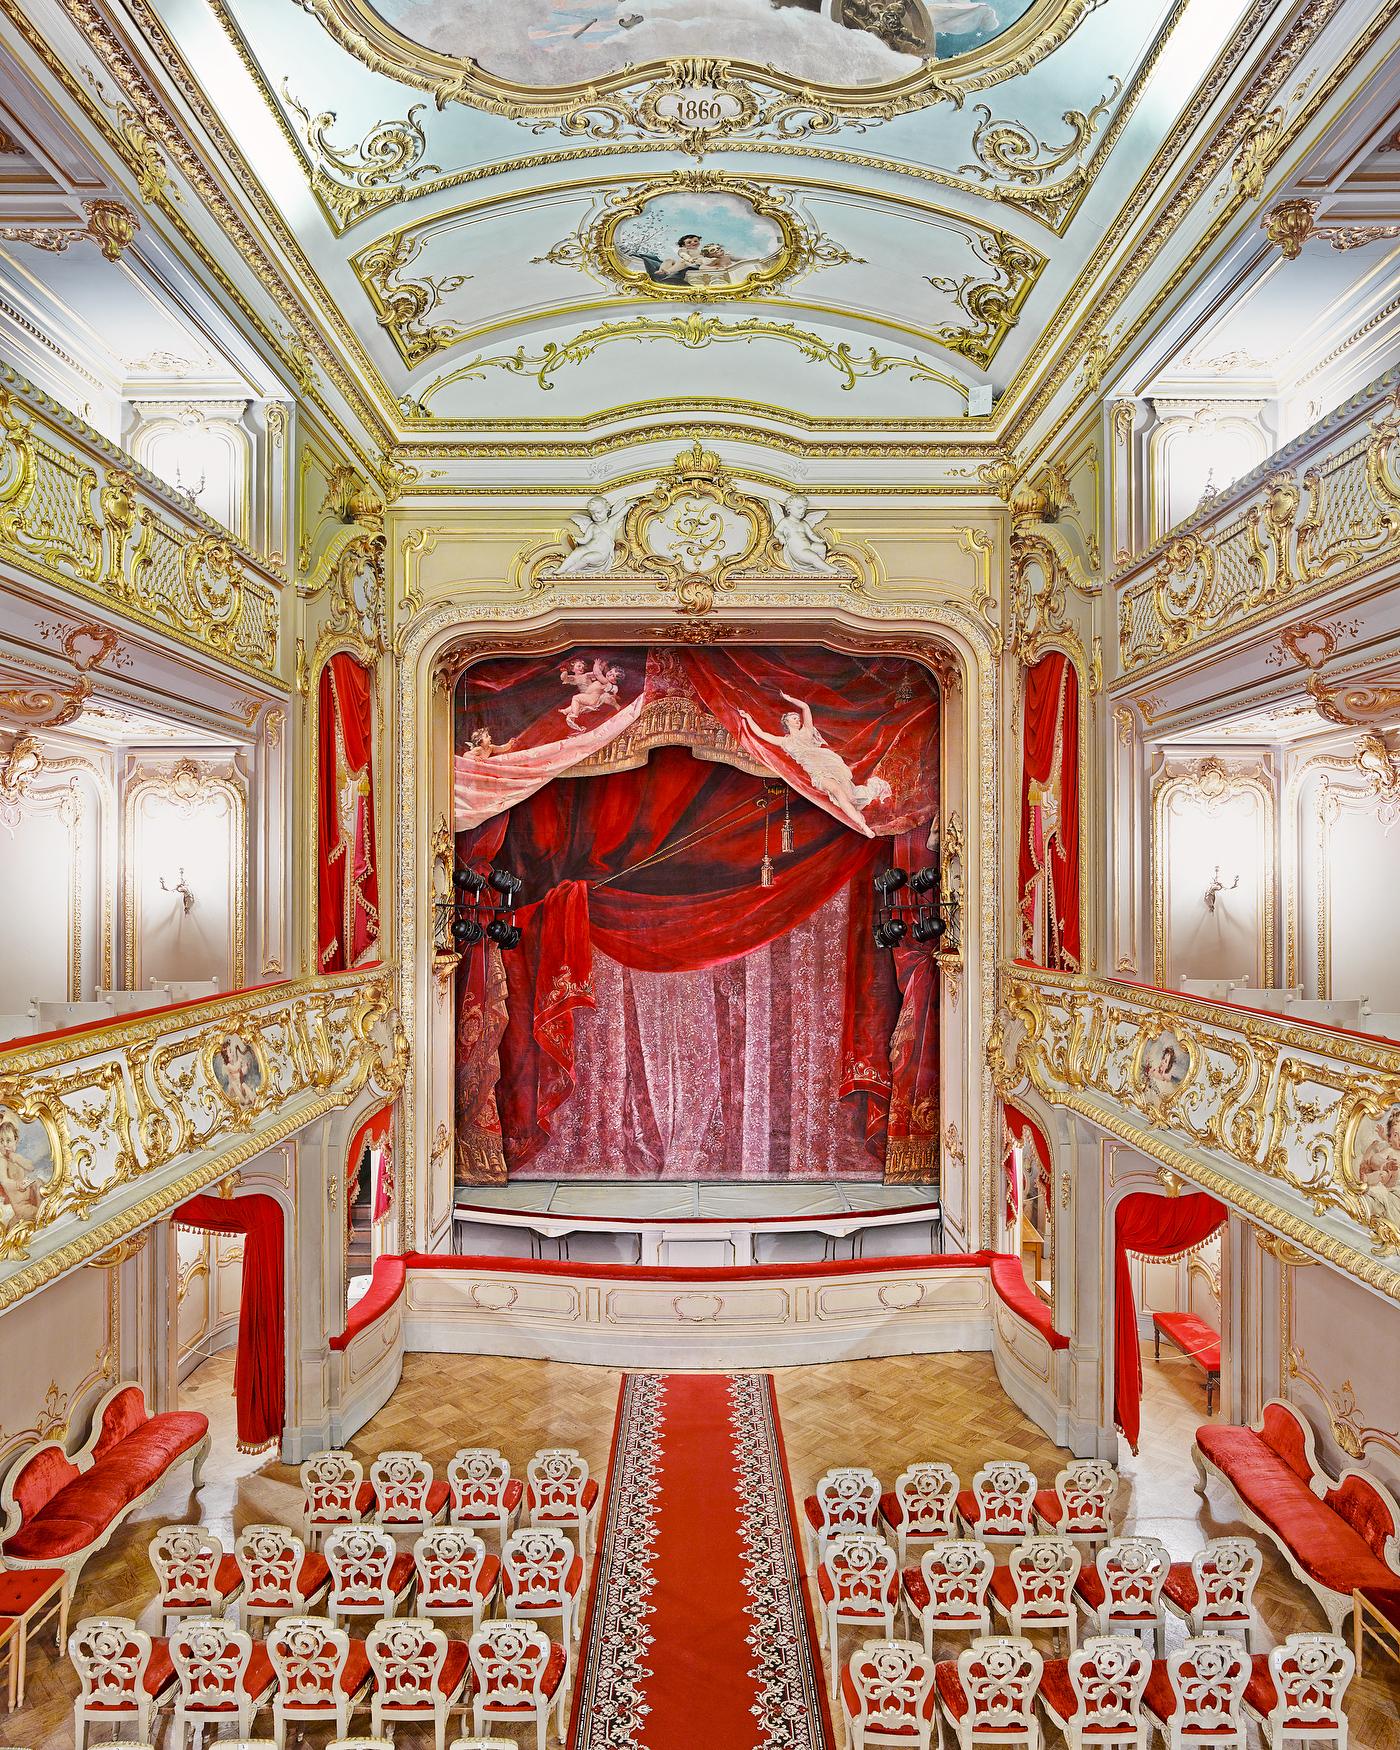 Yusopf Theatre Curtain, St Petersburg, Russia (32” x 40”)